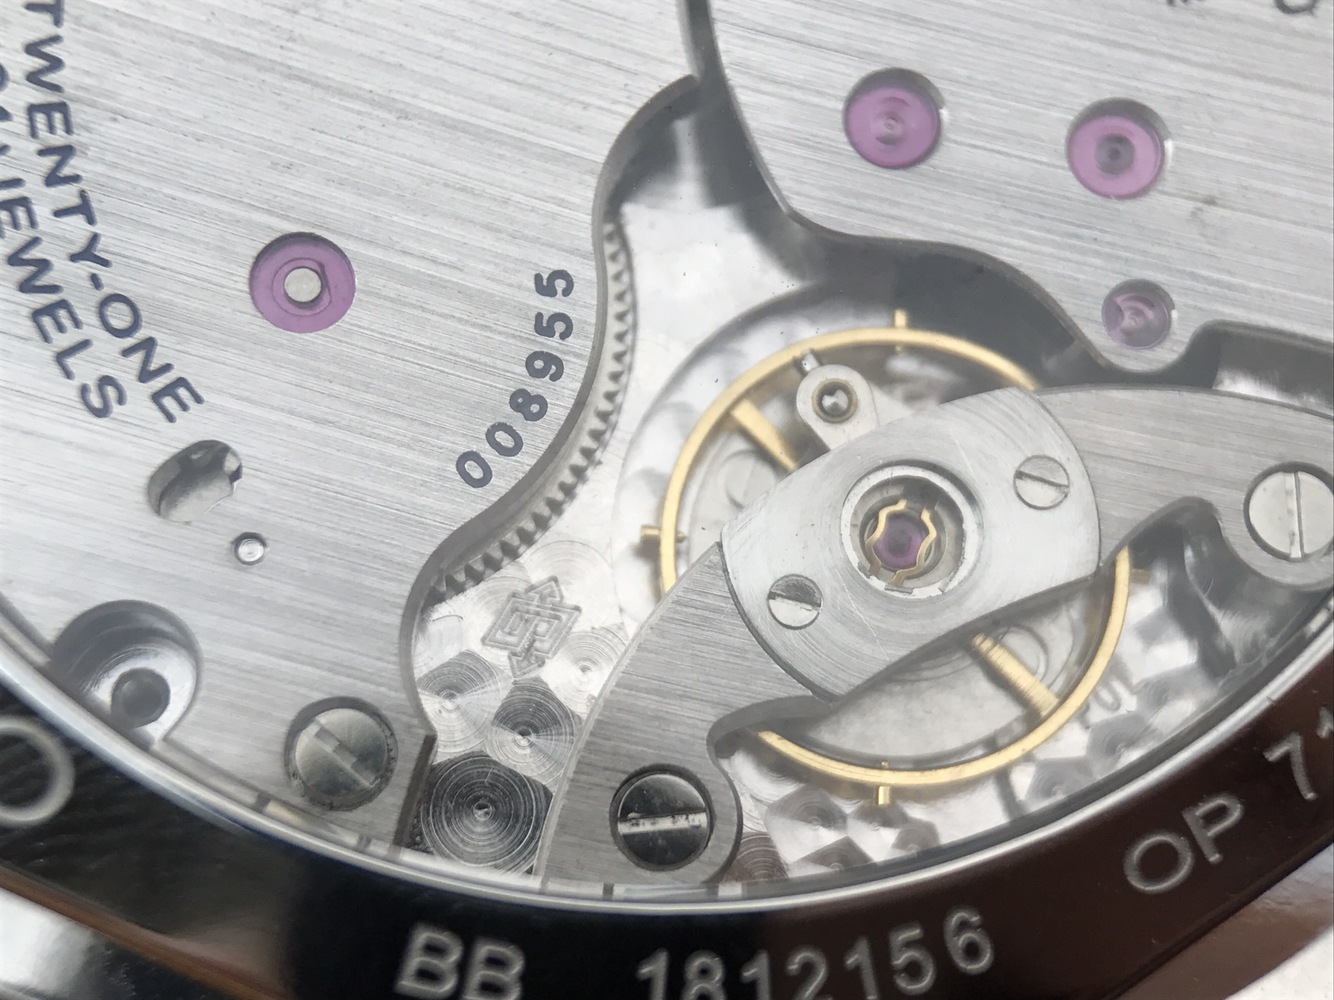 2023041501020696 - 沛納海手錶復刻手錶怎麽樣 ZF高品質版本沛納海pam690￥2780